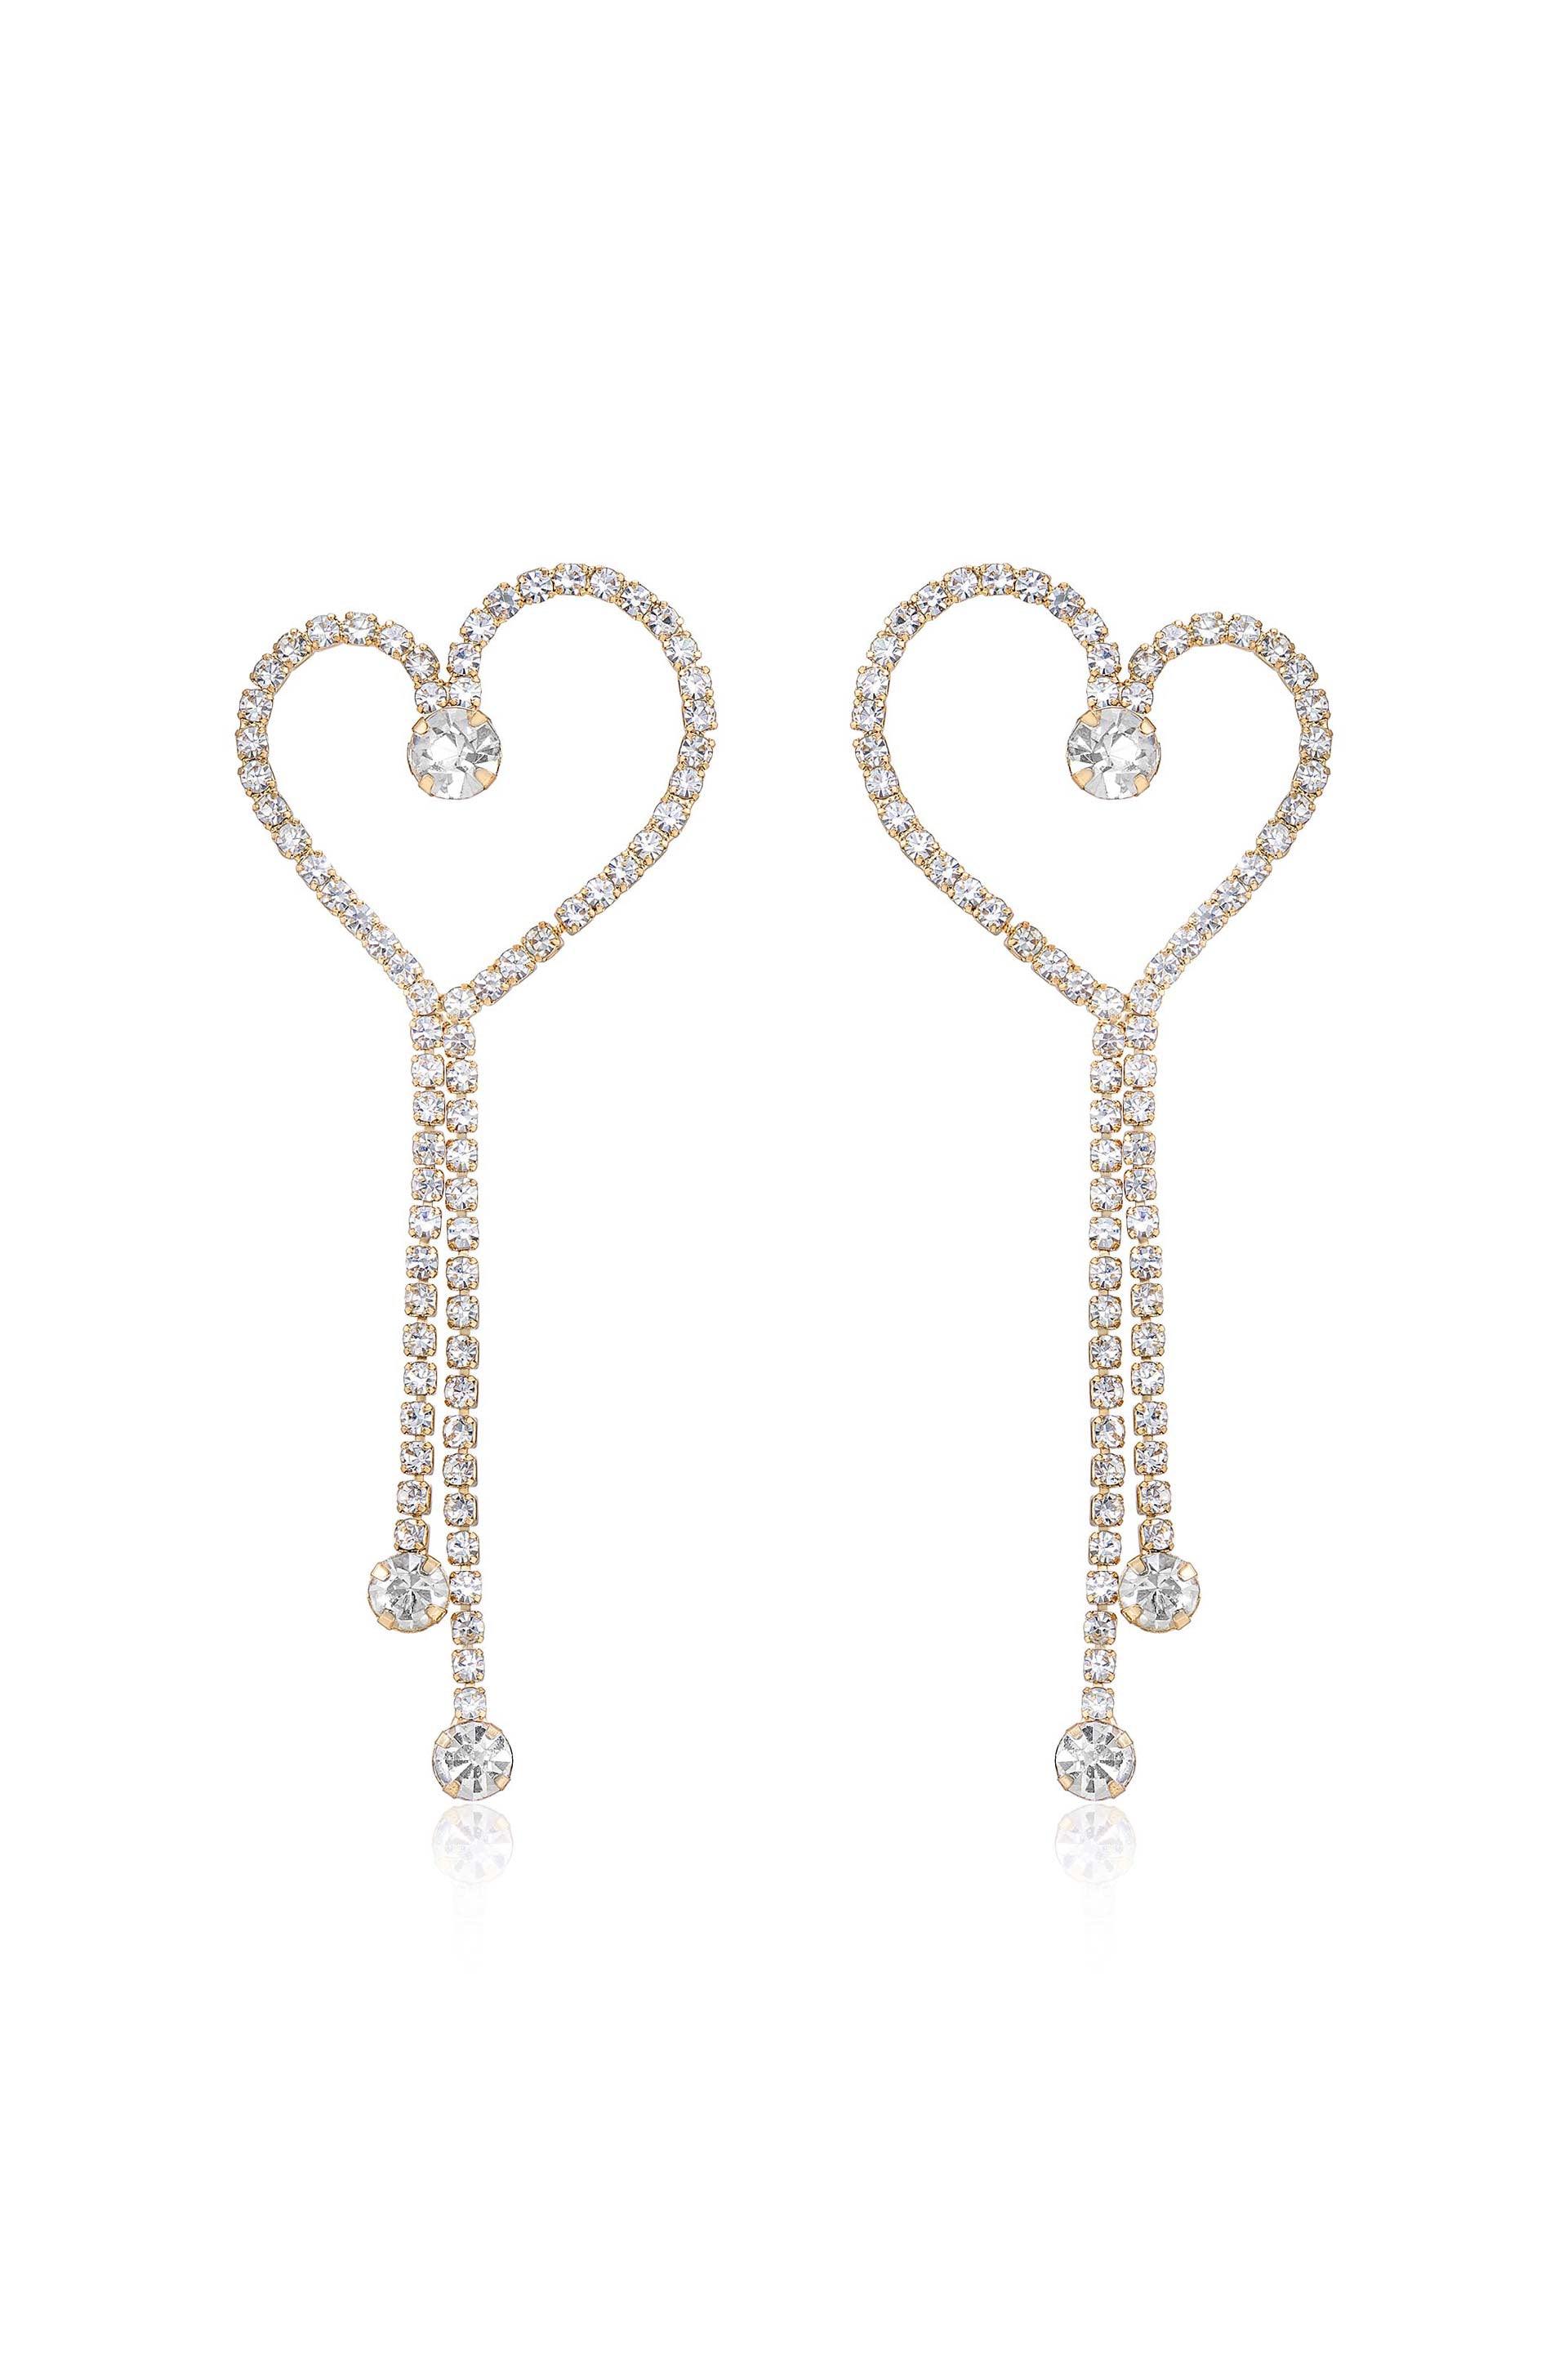 Crystal Heart 18k Gold Plated Linear Drop Earrings